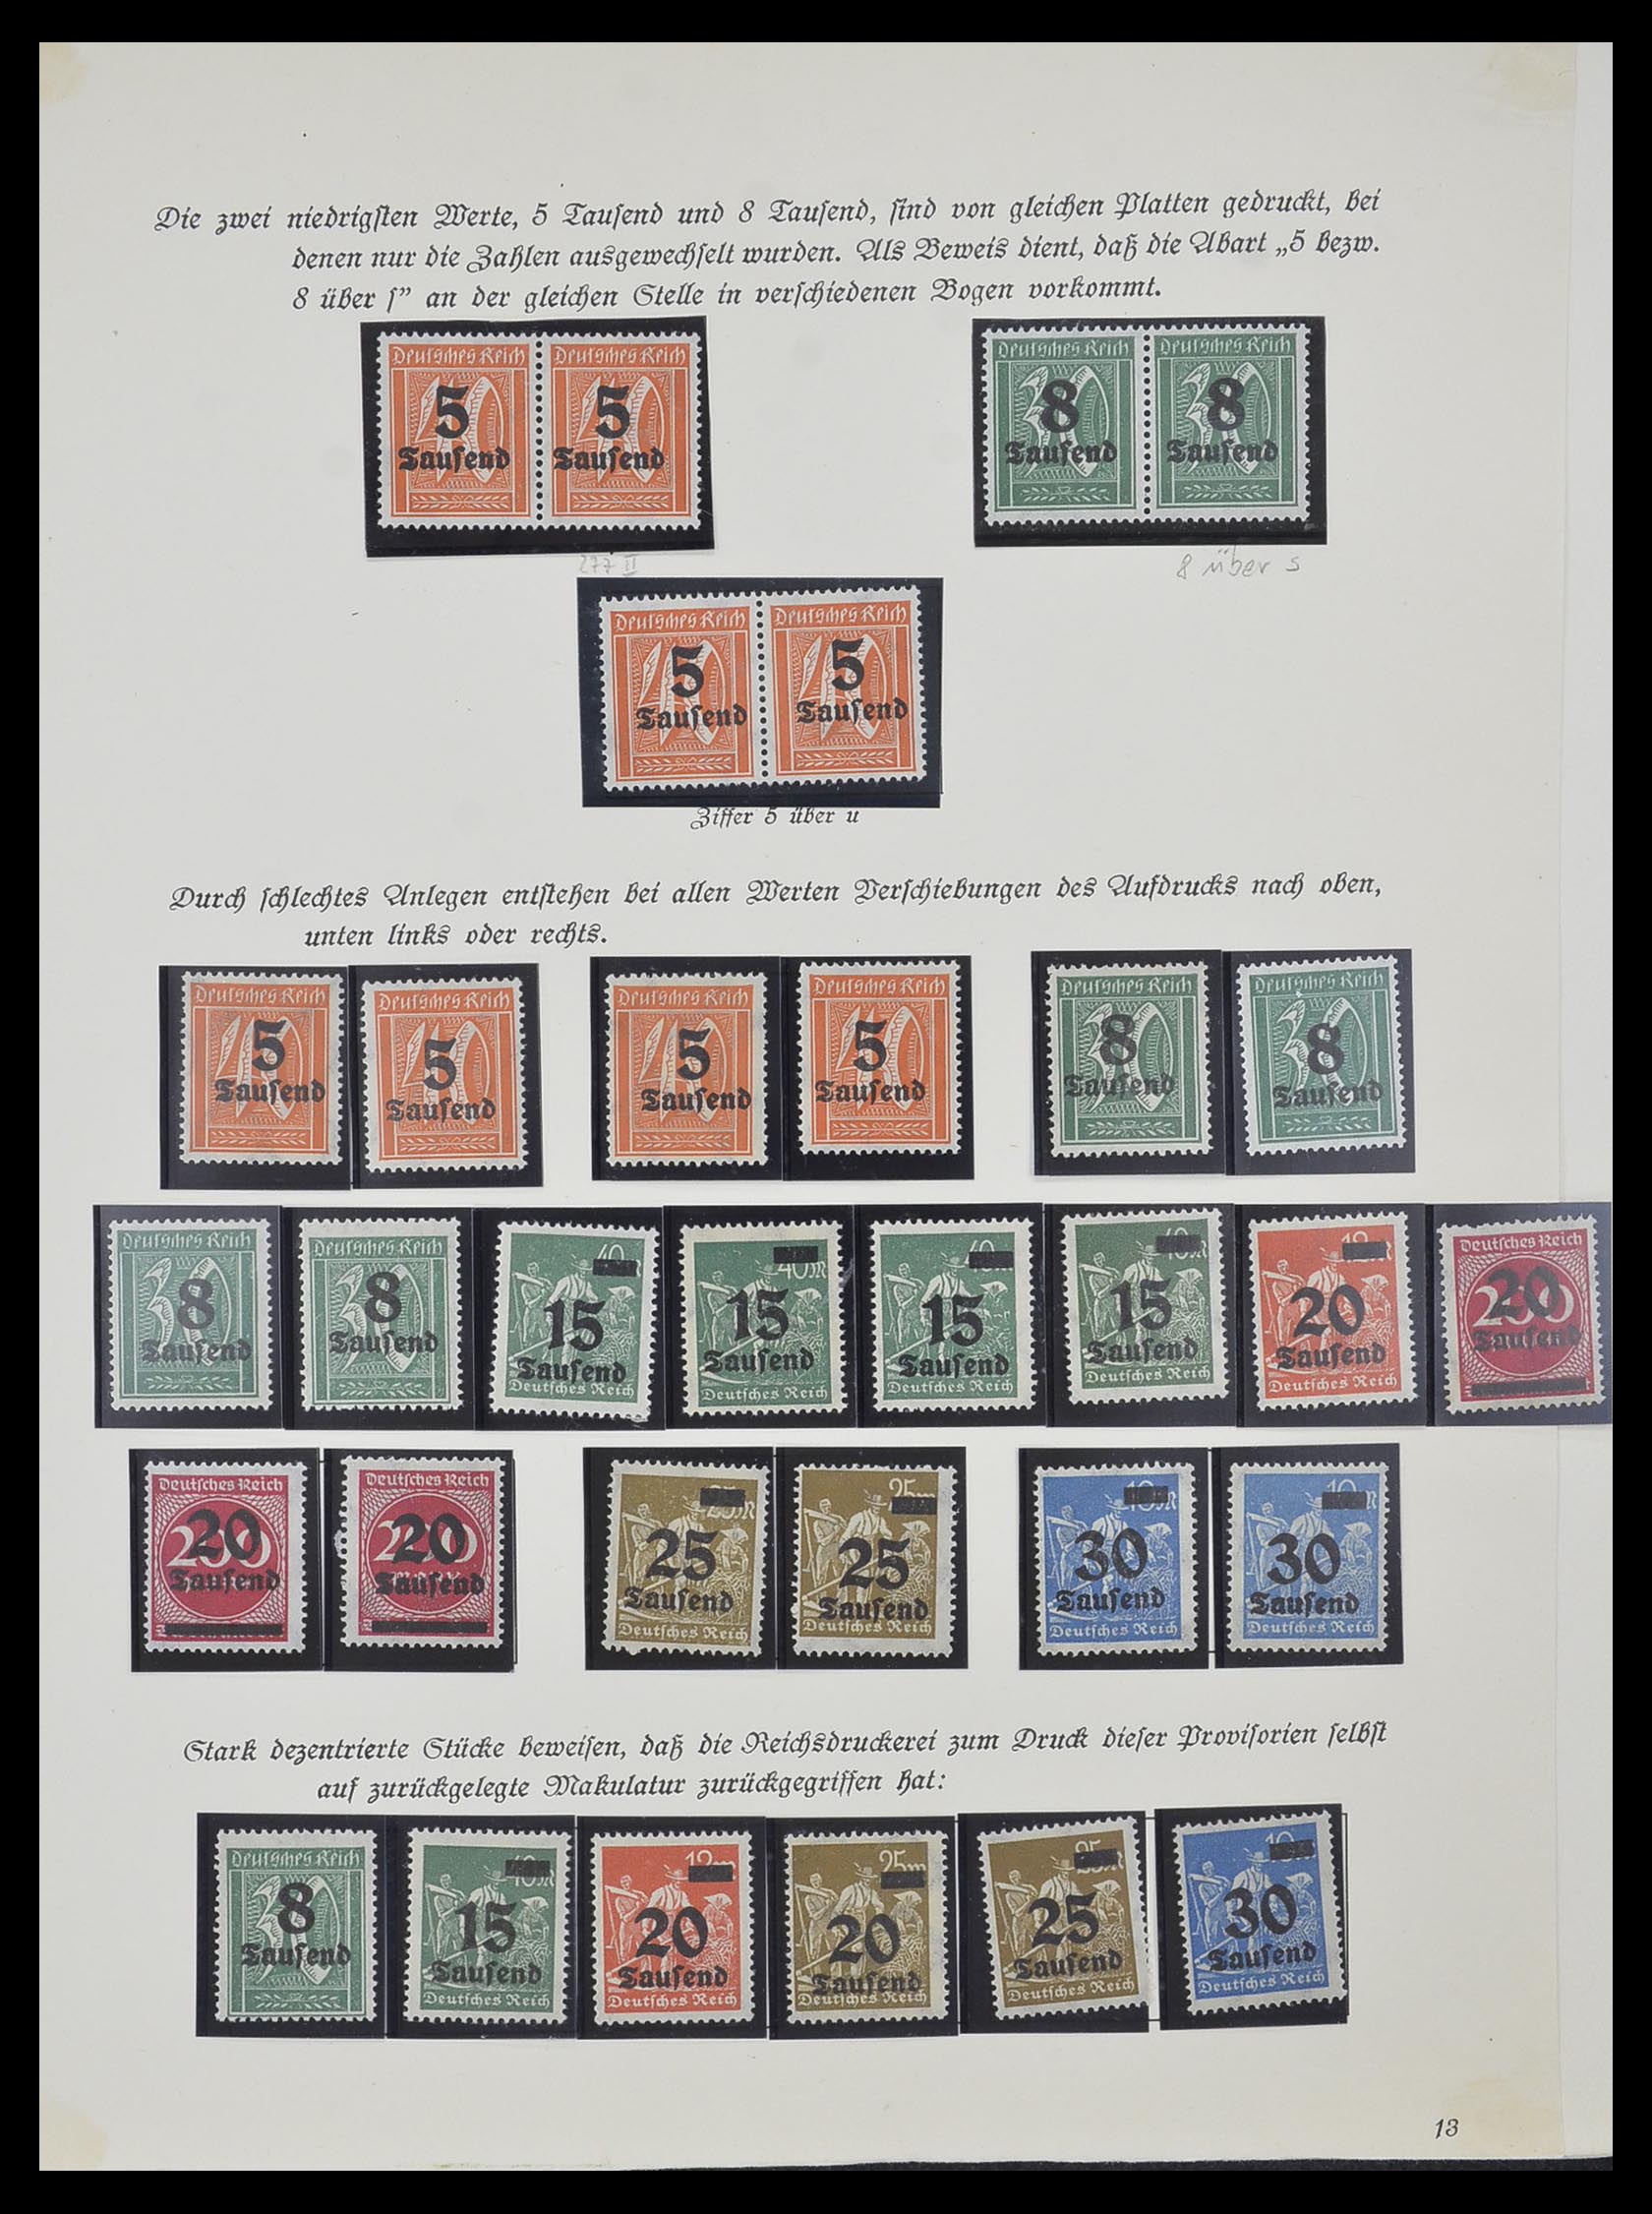 33957 005 - Postzegelverzameling 33957 Duitse Rijk infla 1923.